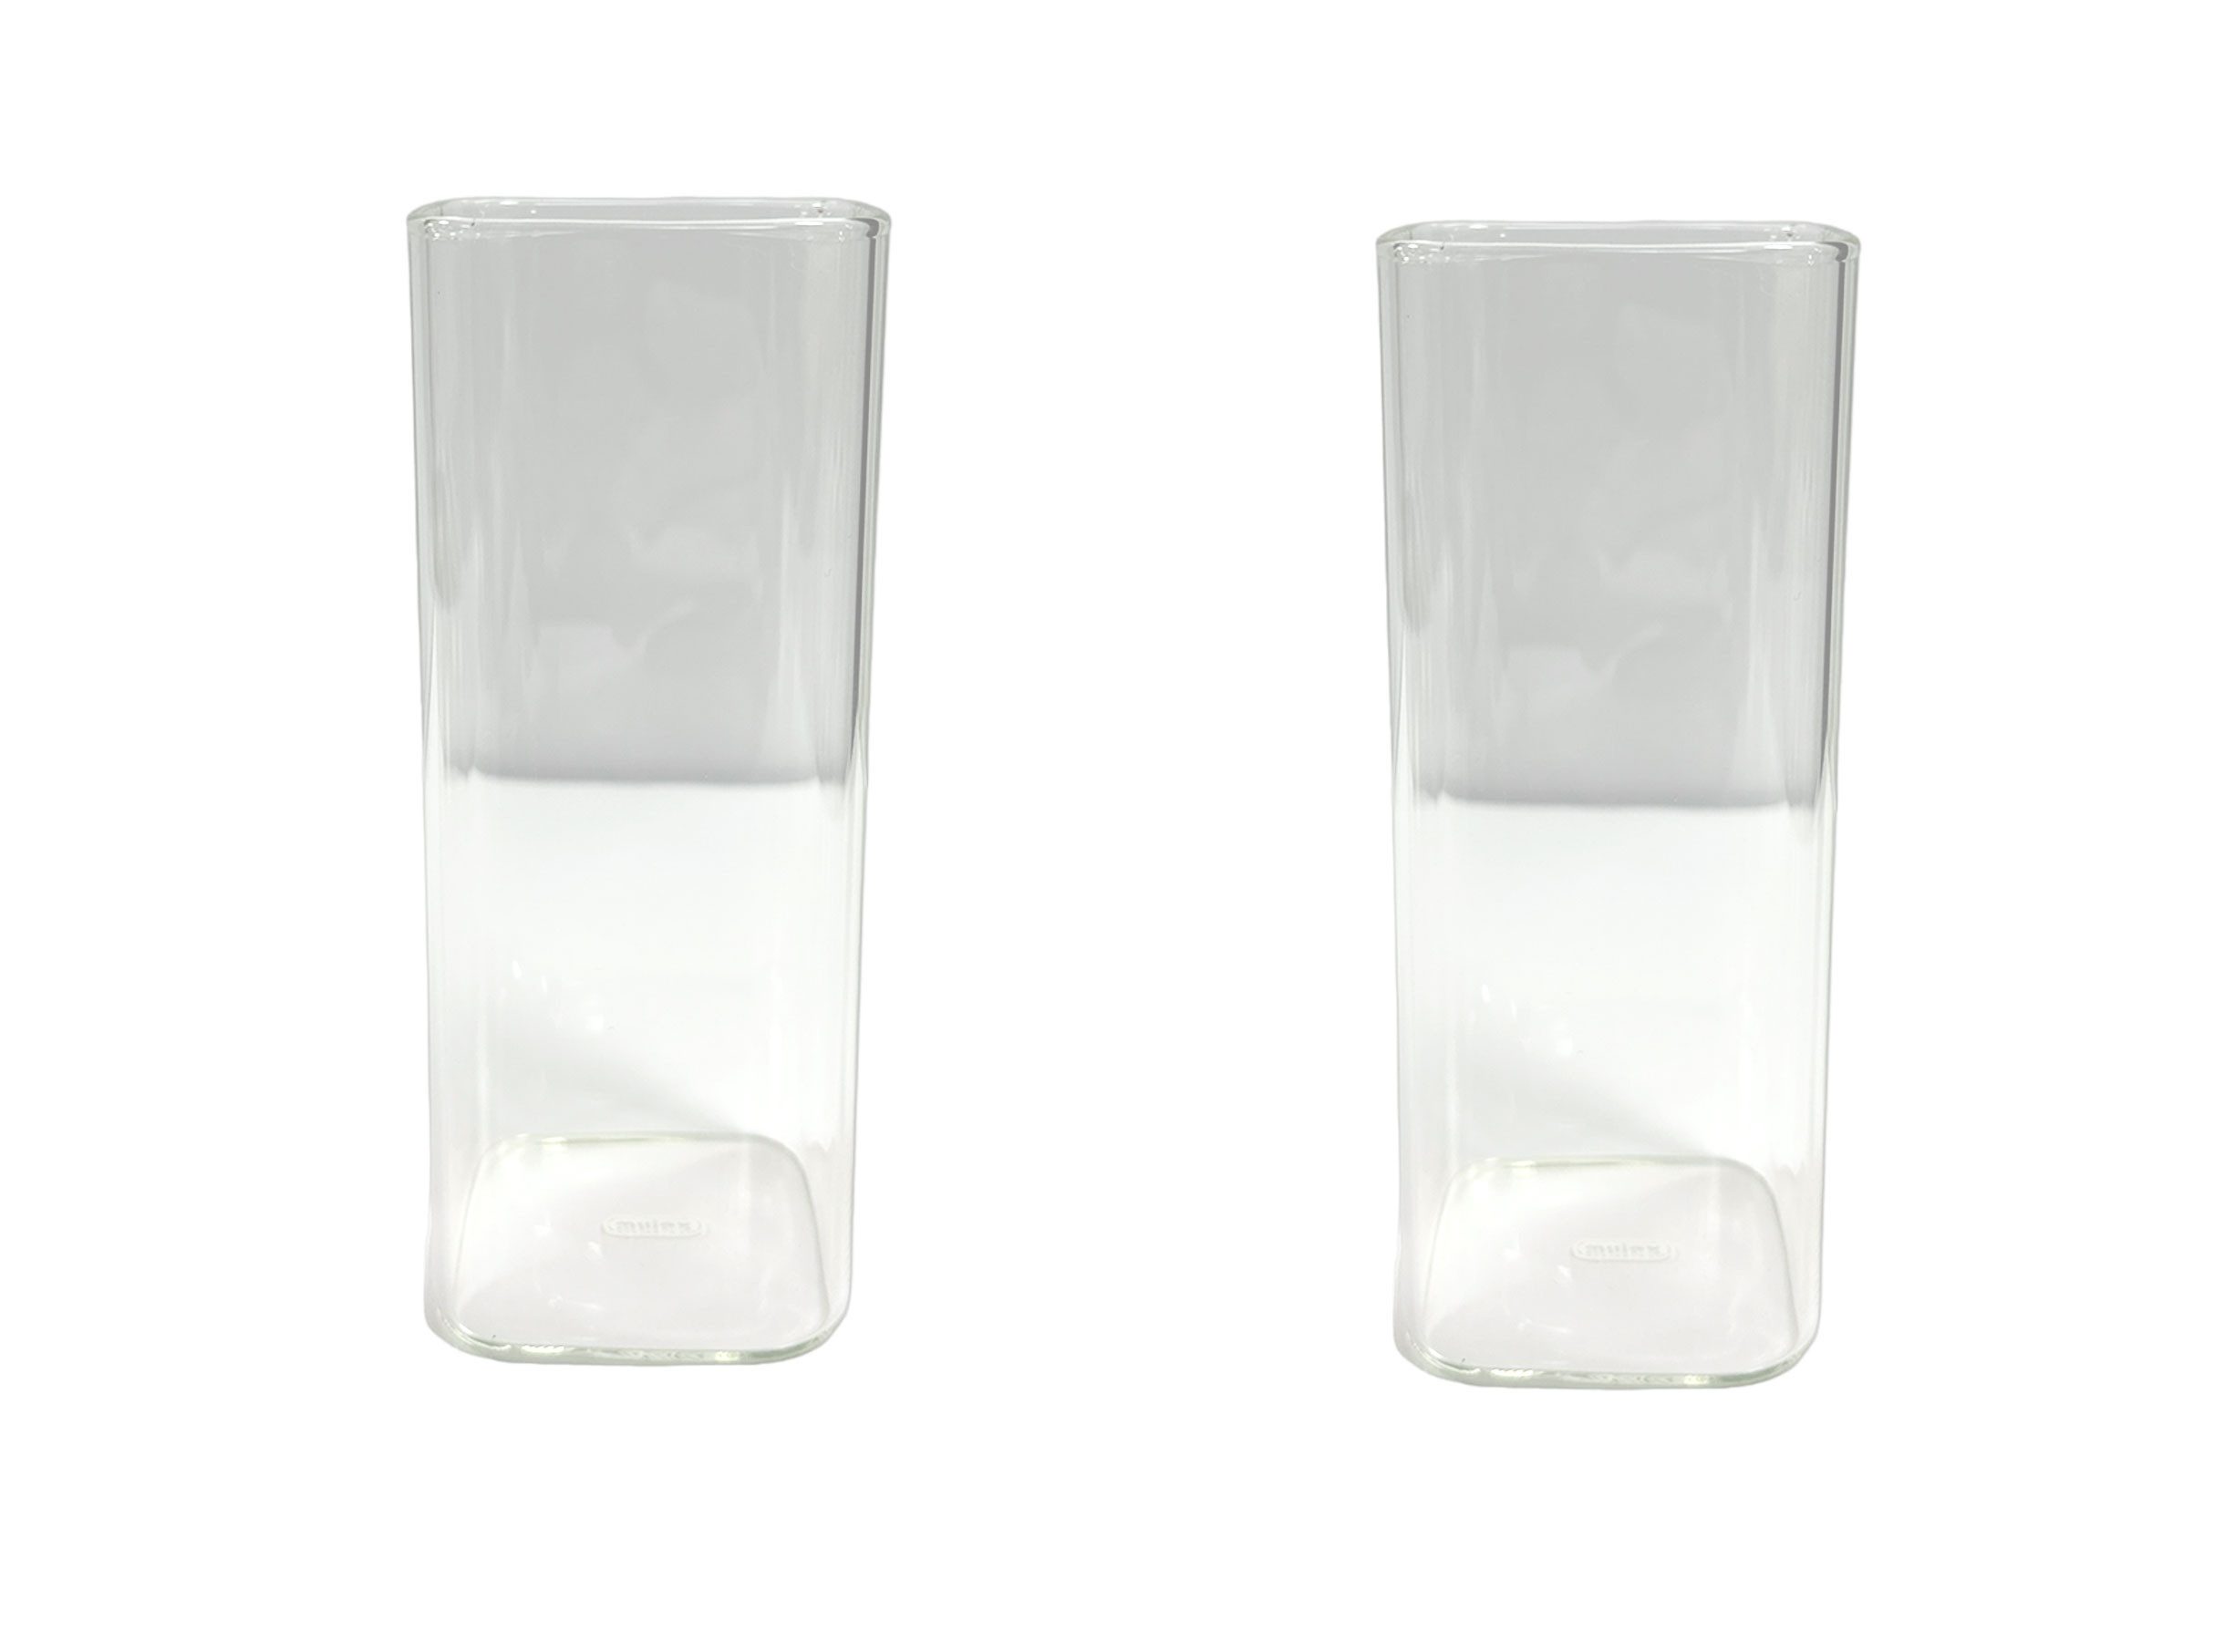 Mulex Скло-Set Mulex, Glas, rechteckiges quadratisches Glas mit rundem Rand